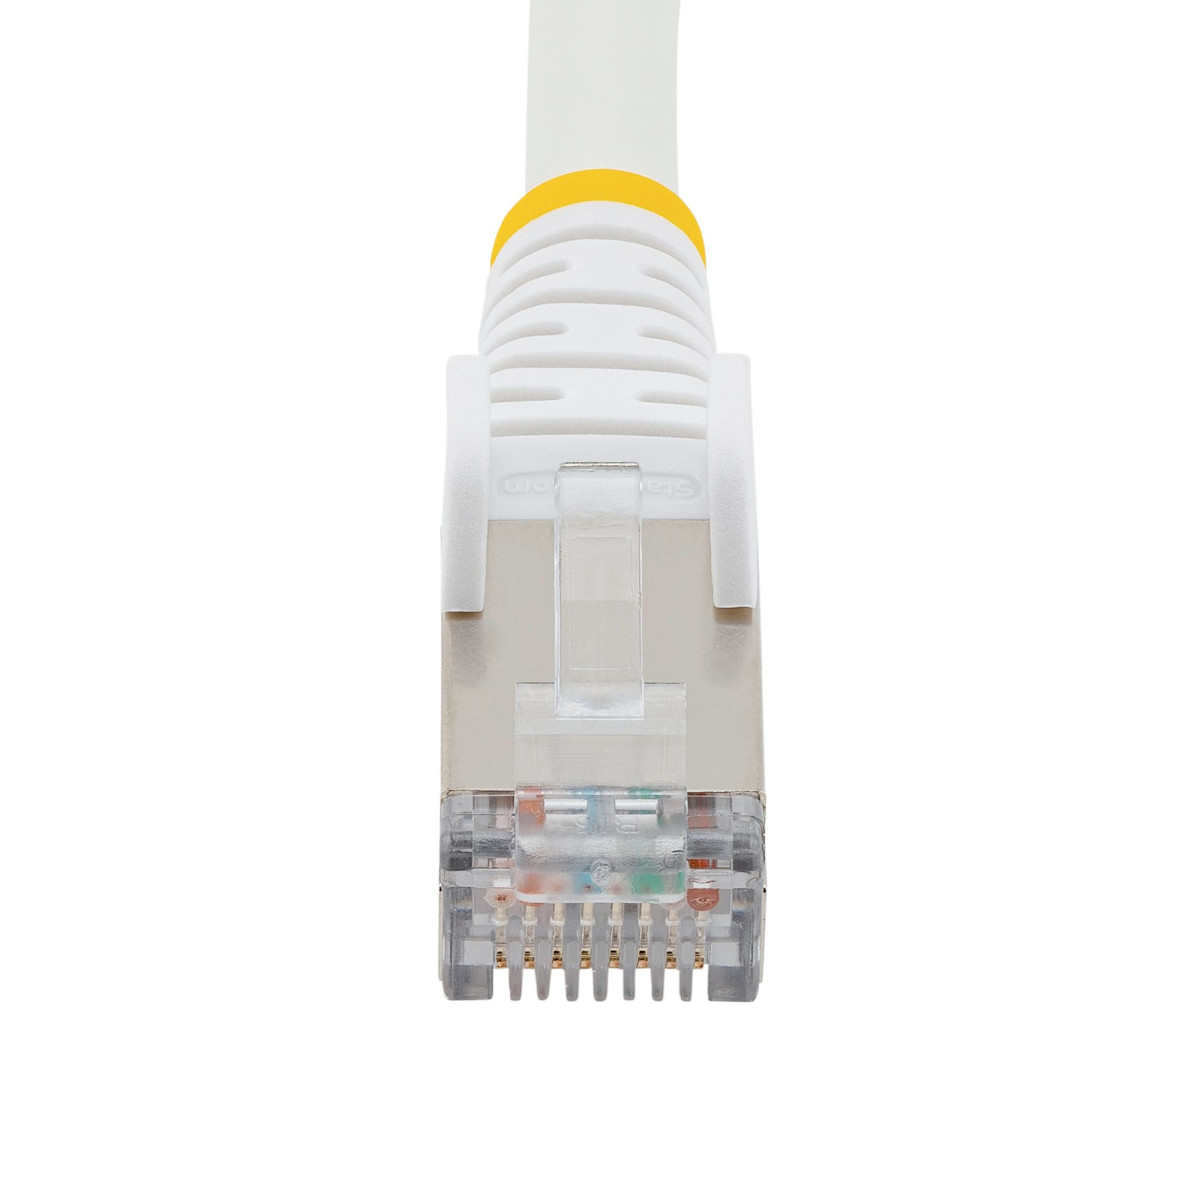 1.5m LSZH CAT6a Ethernet Cable - White